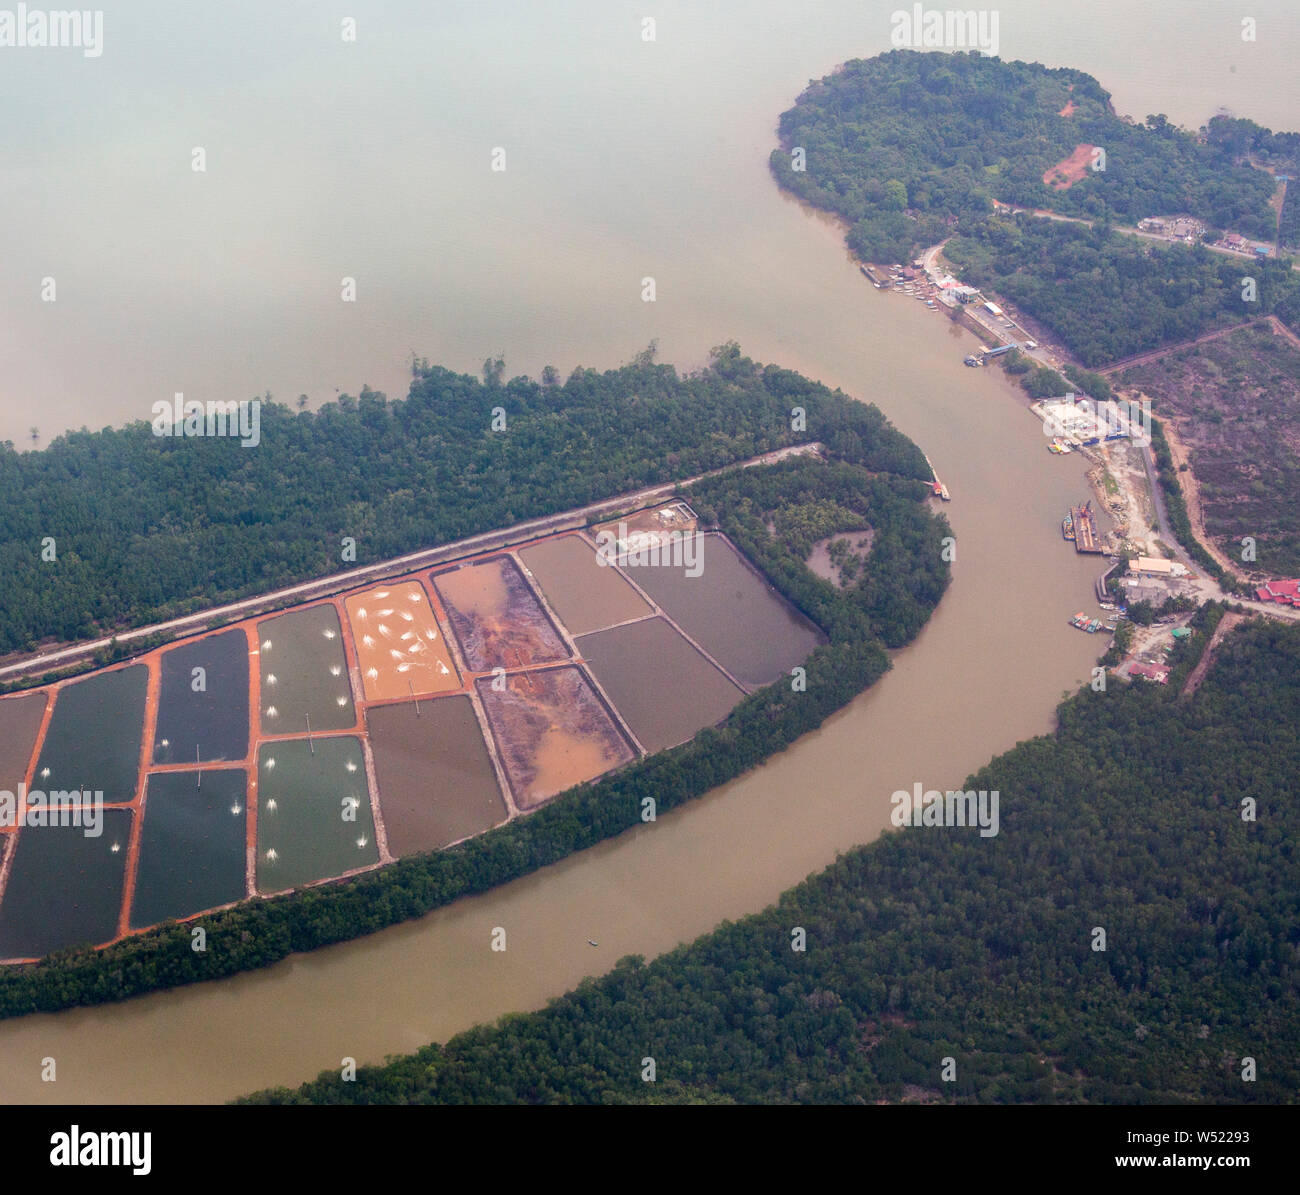 Vue aérienne d'une ferme crevettière situé près de l'océan à Selangor, Malaisie. Banque D'Images